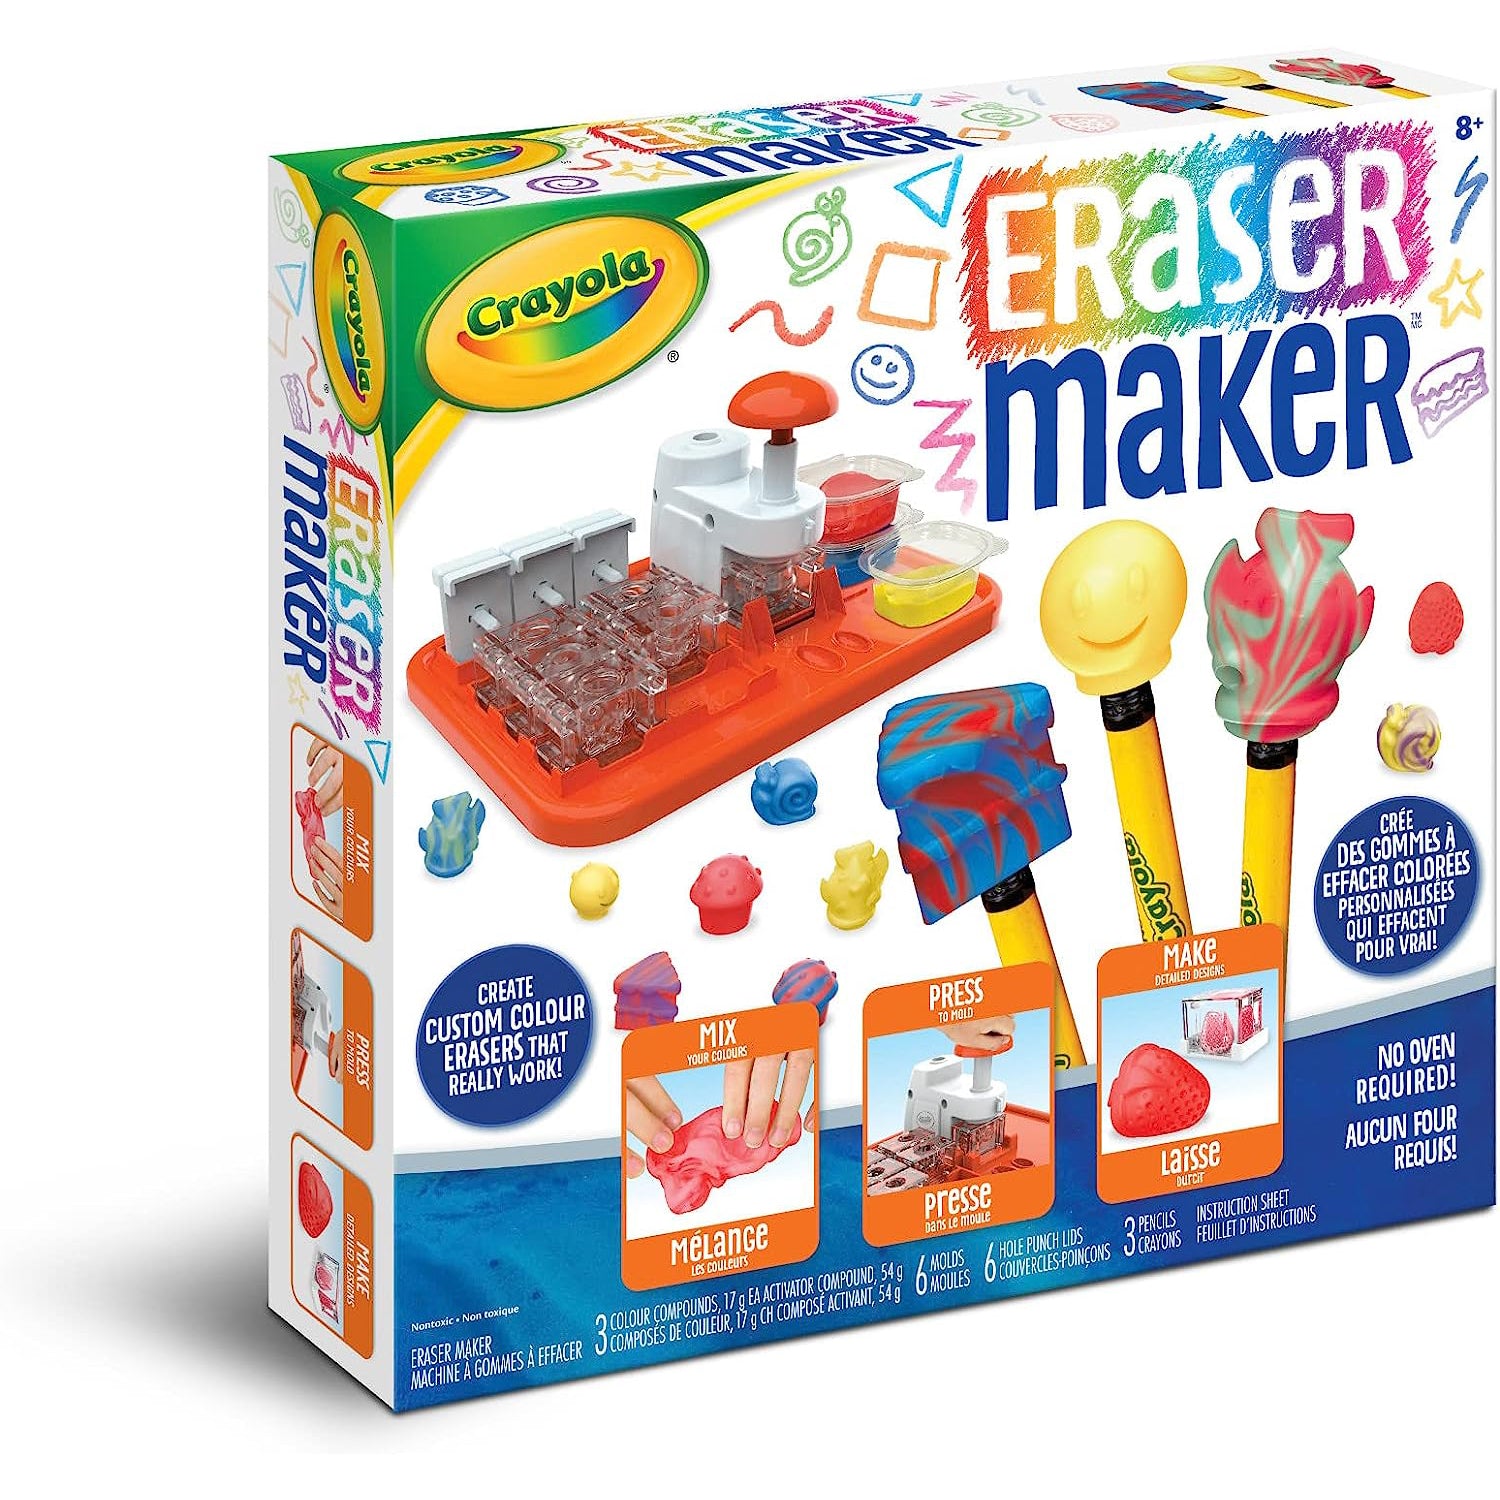 Crayola Marker Maker : Toys & Games 